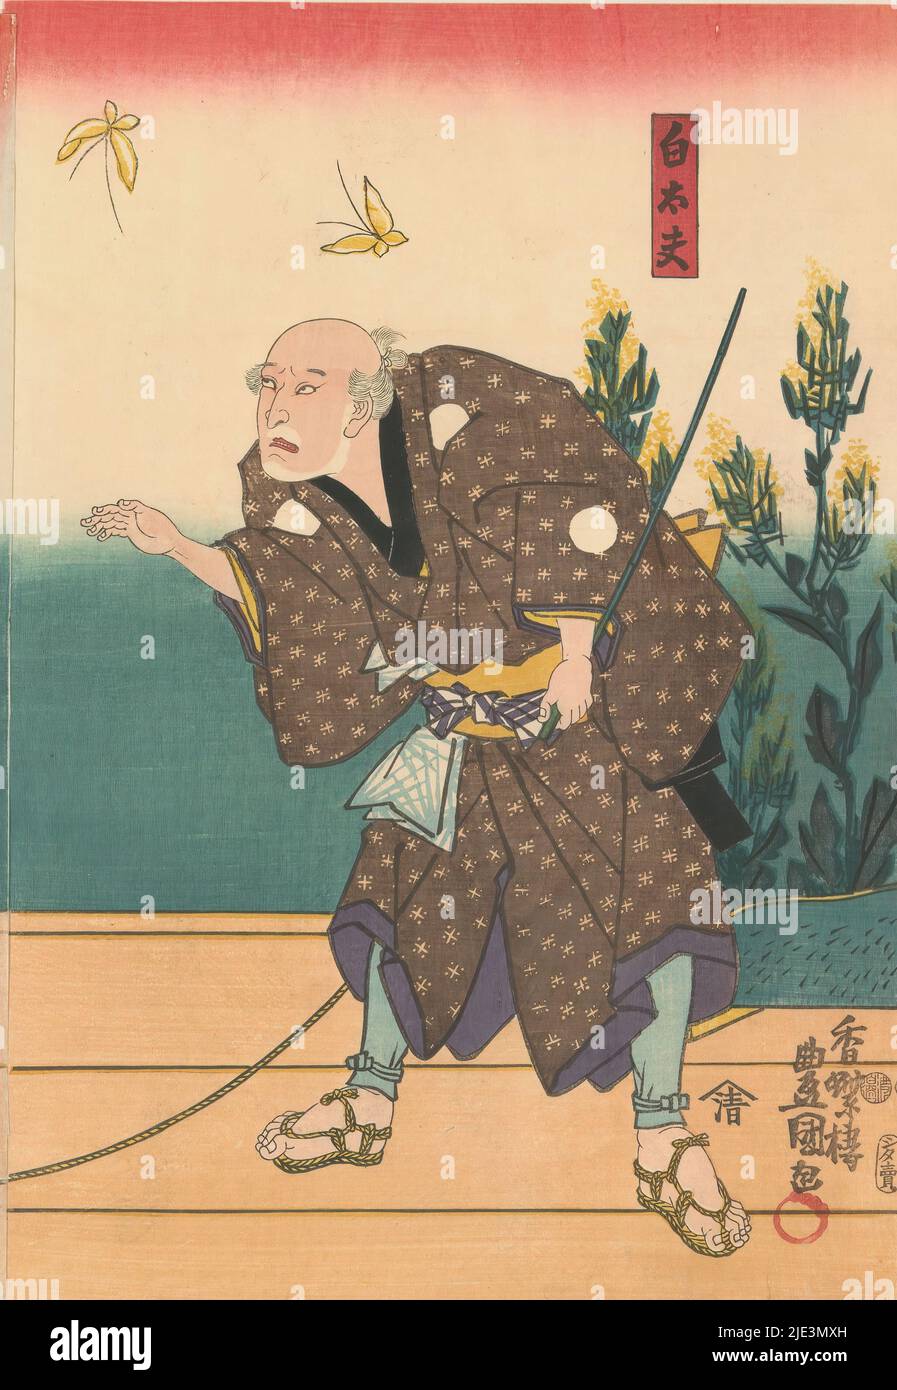 Shirotayû con due farfalle, l'attore Kabuki Ichikawa Kodanji IV, nel ruolo del contadino Shirotayû, tirando un bue nero su cui si siede Sugawara no Michizane, raffigurato sulla sinistra di questo dittico. Insieme sono sulla loro strada al Tempio di Anraku per ammirare un albero di ciliegi che è stato miracolosamente spostato dal villaggio natale di Michizane al tempio., stampatore: Kunisada (i), Utagawa, (menzionato sull'oggetto), editore: Shimizuya Naojirô, (menzionato sull'oggetto), Giappone, in o dopo gennaio-1850 - prima marzo-1853, carta, legno a colori, altezza 360 mm x larghezza 250 mm Foto Stock